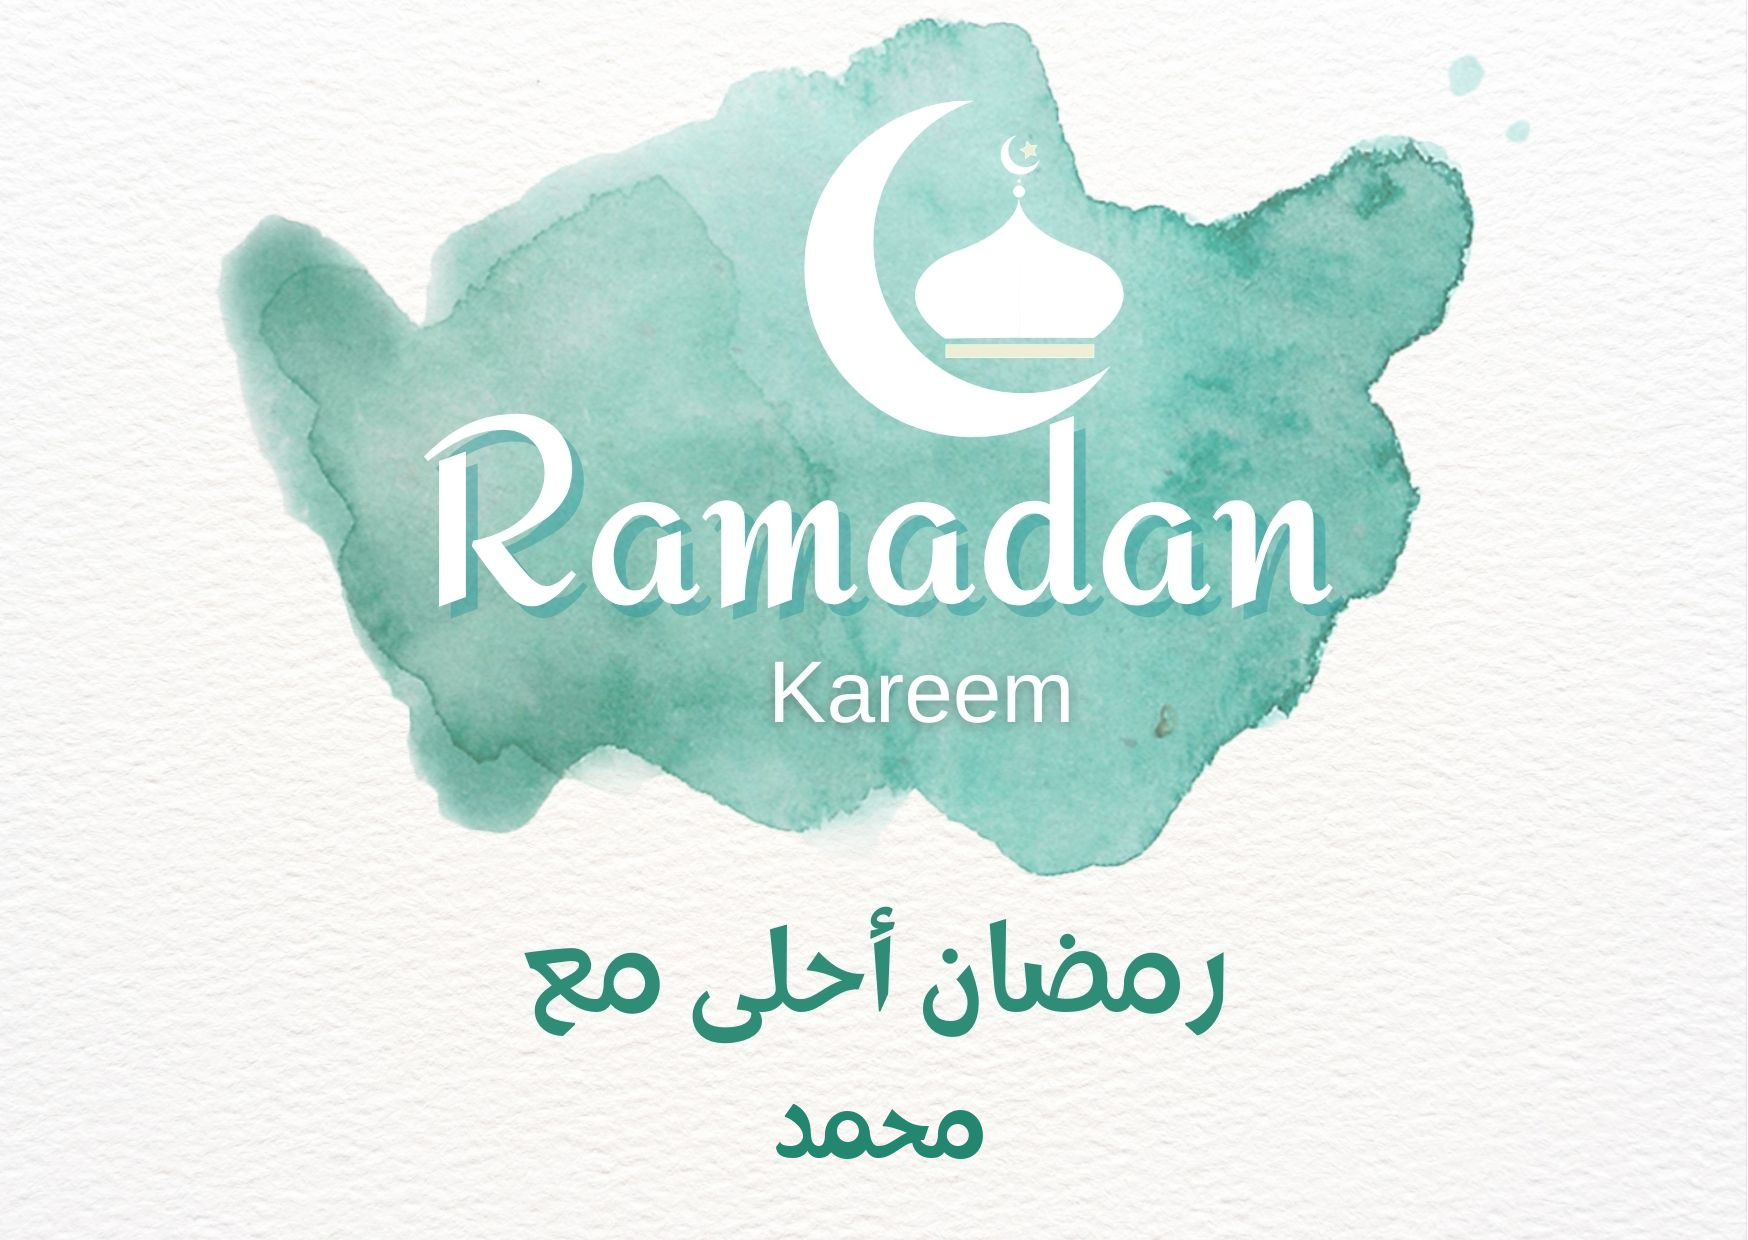 اسم محمد على صورة ضمن خدمة تصميم رمضان احلي مع اسمك